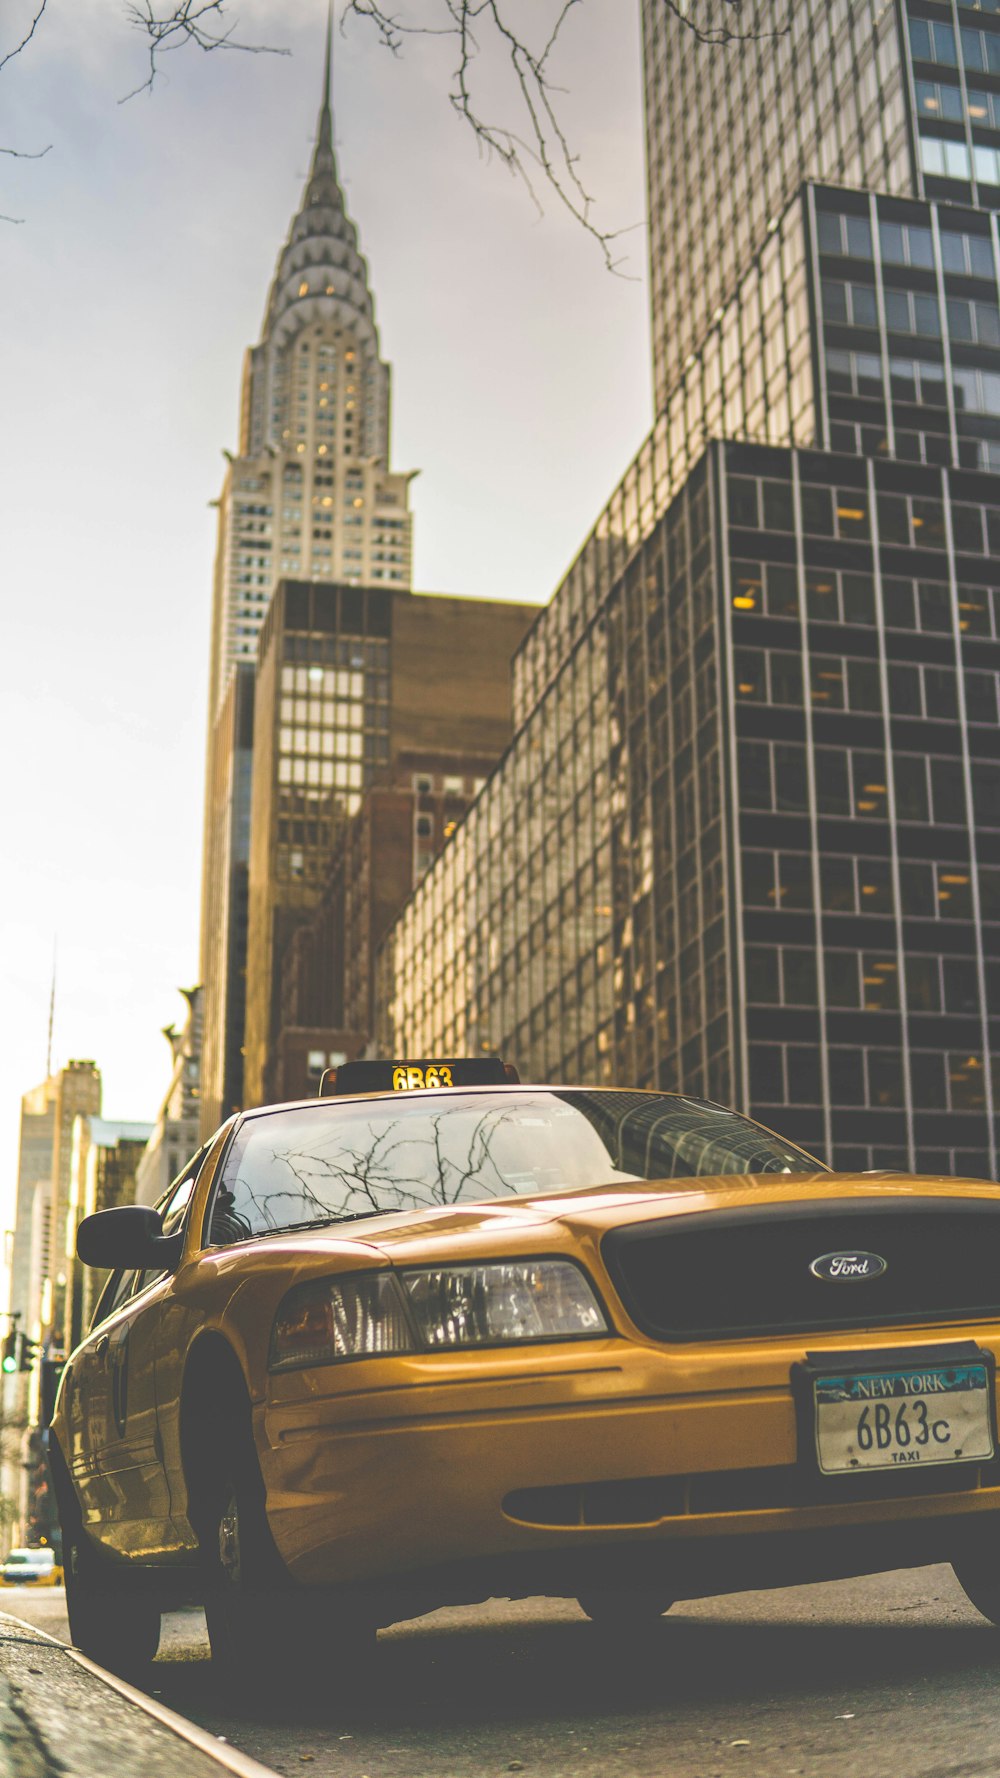 táxi Ford amarelo estacionado perto do edifício Chrysler